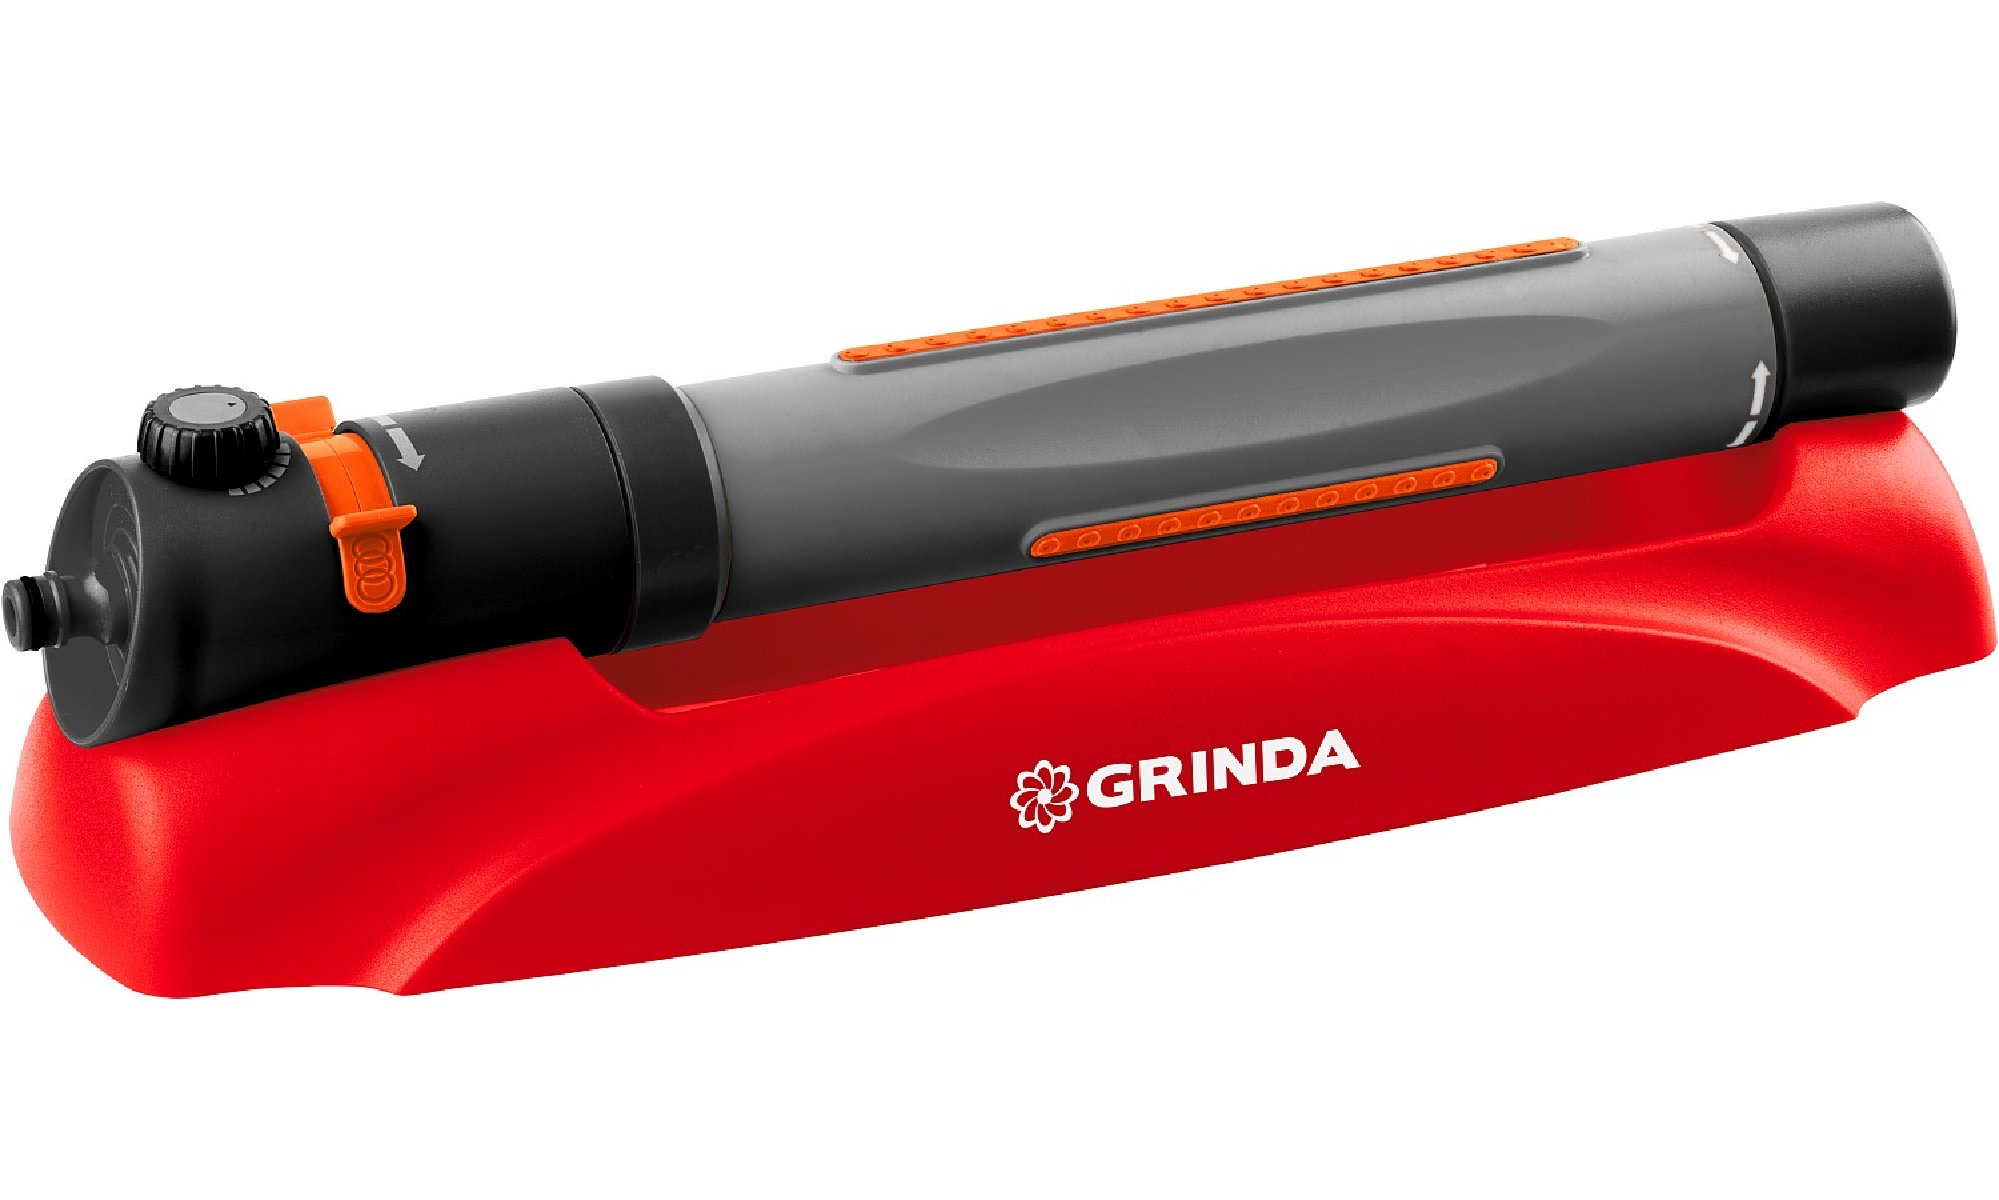   GRINDA GX-19 3 , 19 ,  (427689)